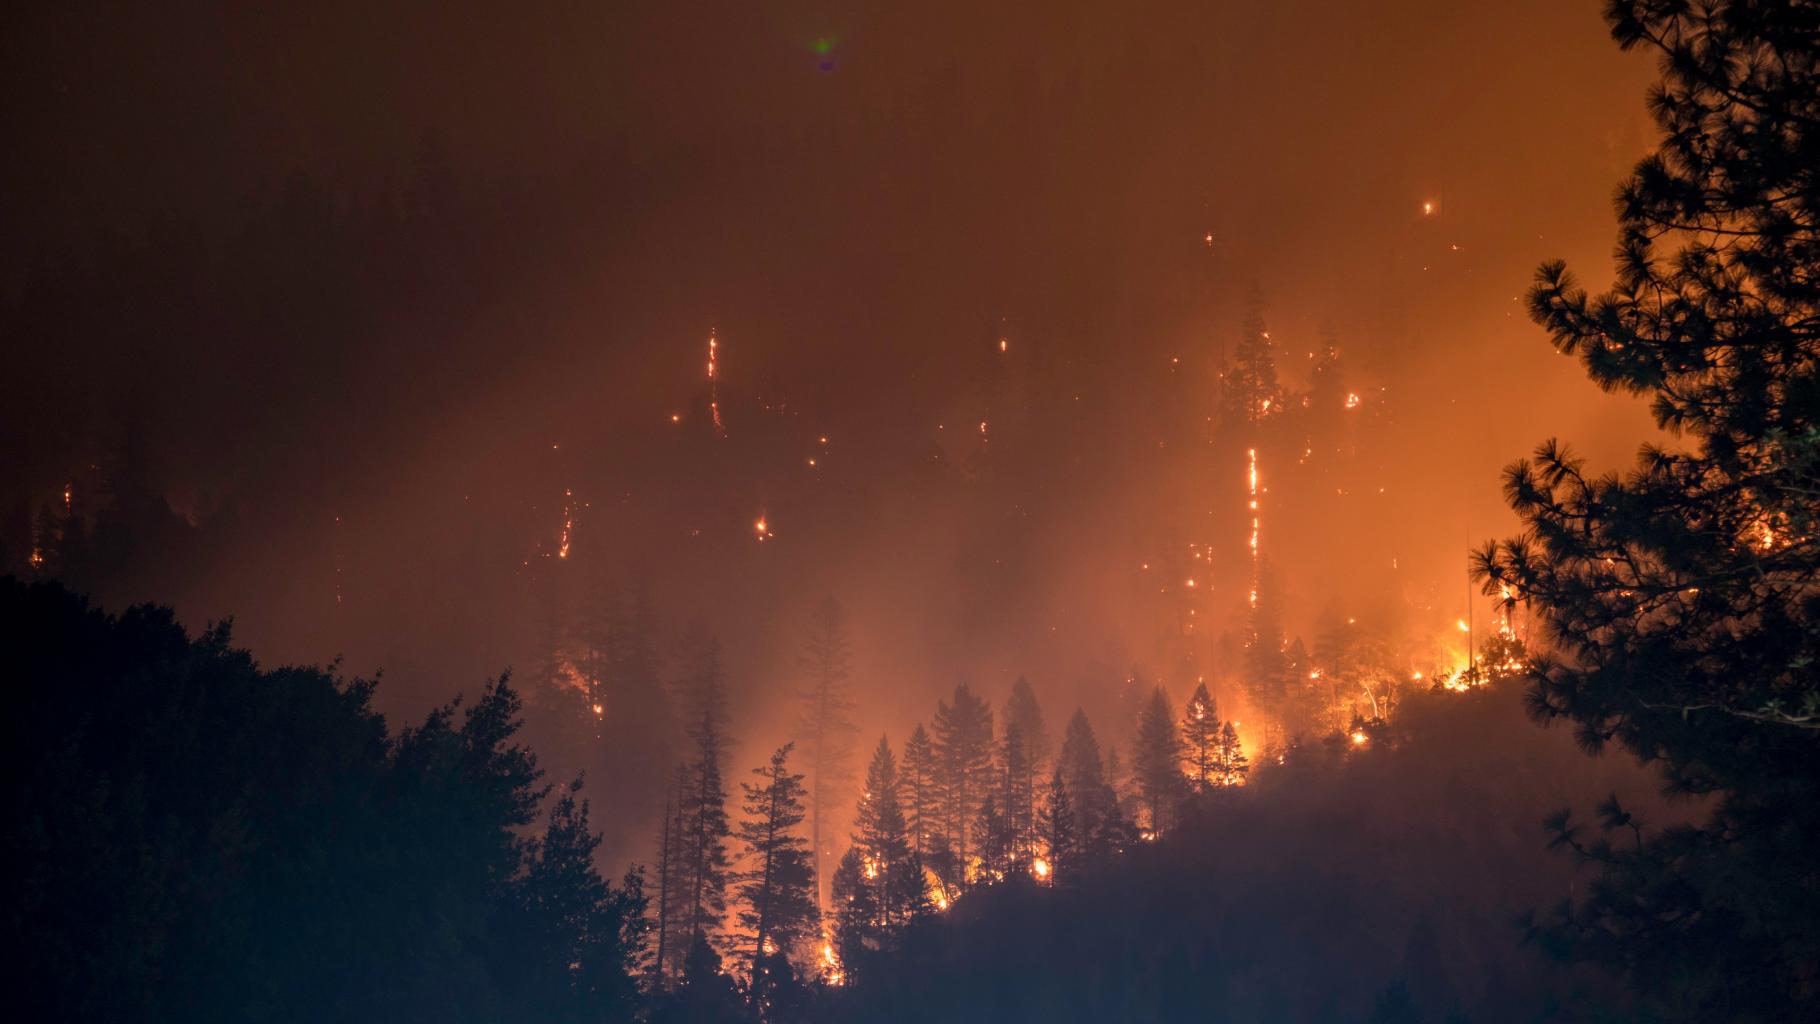 Brennende Bäume, Rauch und Funken bei einem Waldbrand im Klamath National Forest, USA.